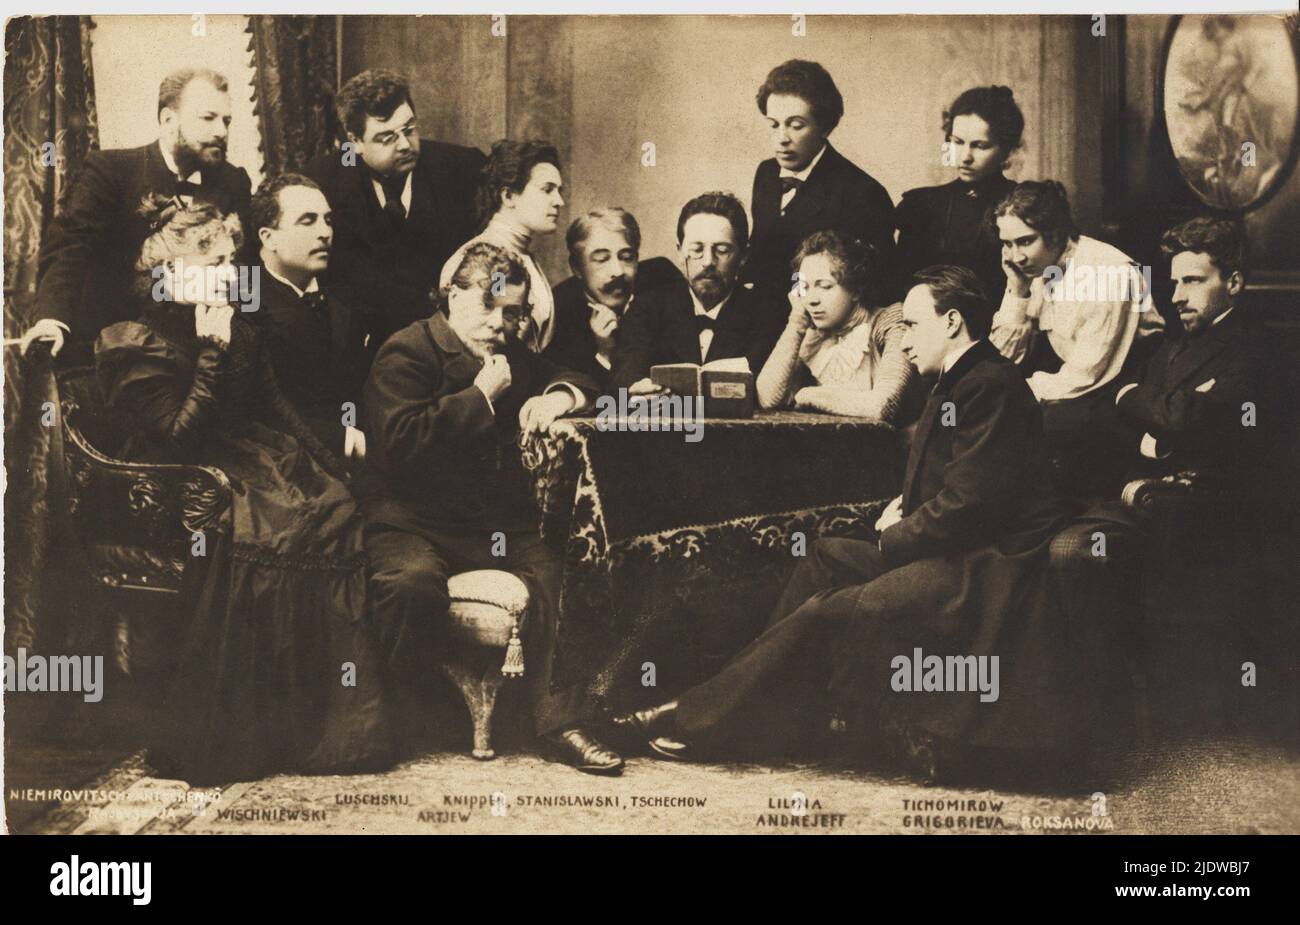 1895 aprox. , Moskov , RUSIA : El Teatro El actor ruso , director y teórico Konstantin Sergeevic STANISLAVSKIJ ( nacido K. S. Alekseev ,1863 - 1938 ) ( centro de pelo blanco ), fundador de V.I. Nemirovic Dancenko (primer stand a la izquierda en la foto) del TEATRO DE LAS ARTES de Moskow en 1898 . En esta foto con el célebre Antón Pavlovic CECHOV ( Taganrog 1860 - Badenweiler 1904 ) , con gafas en el centro leer un libro. Las otras personas en estas imágenes son : VISHNEVSKY , LUSCHSKY , ARTIJEV , la actriz OLGA KNIPPER ( esposa de CECHOV ), LILINA ANDREEV , TIKHOMIROV , GRIGORIEVA y ROKSANOVA Foto de stock